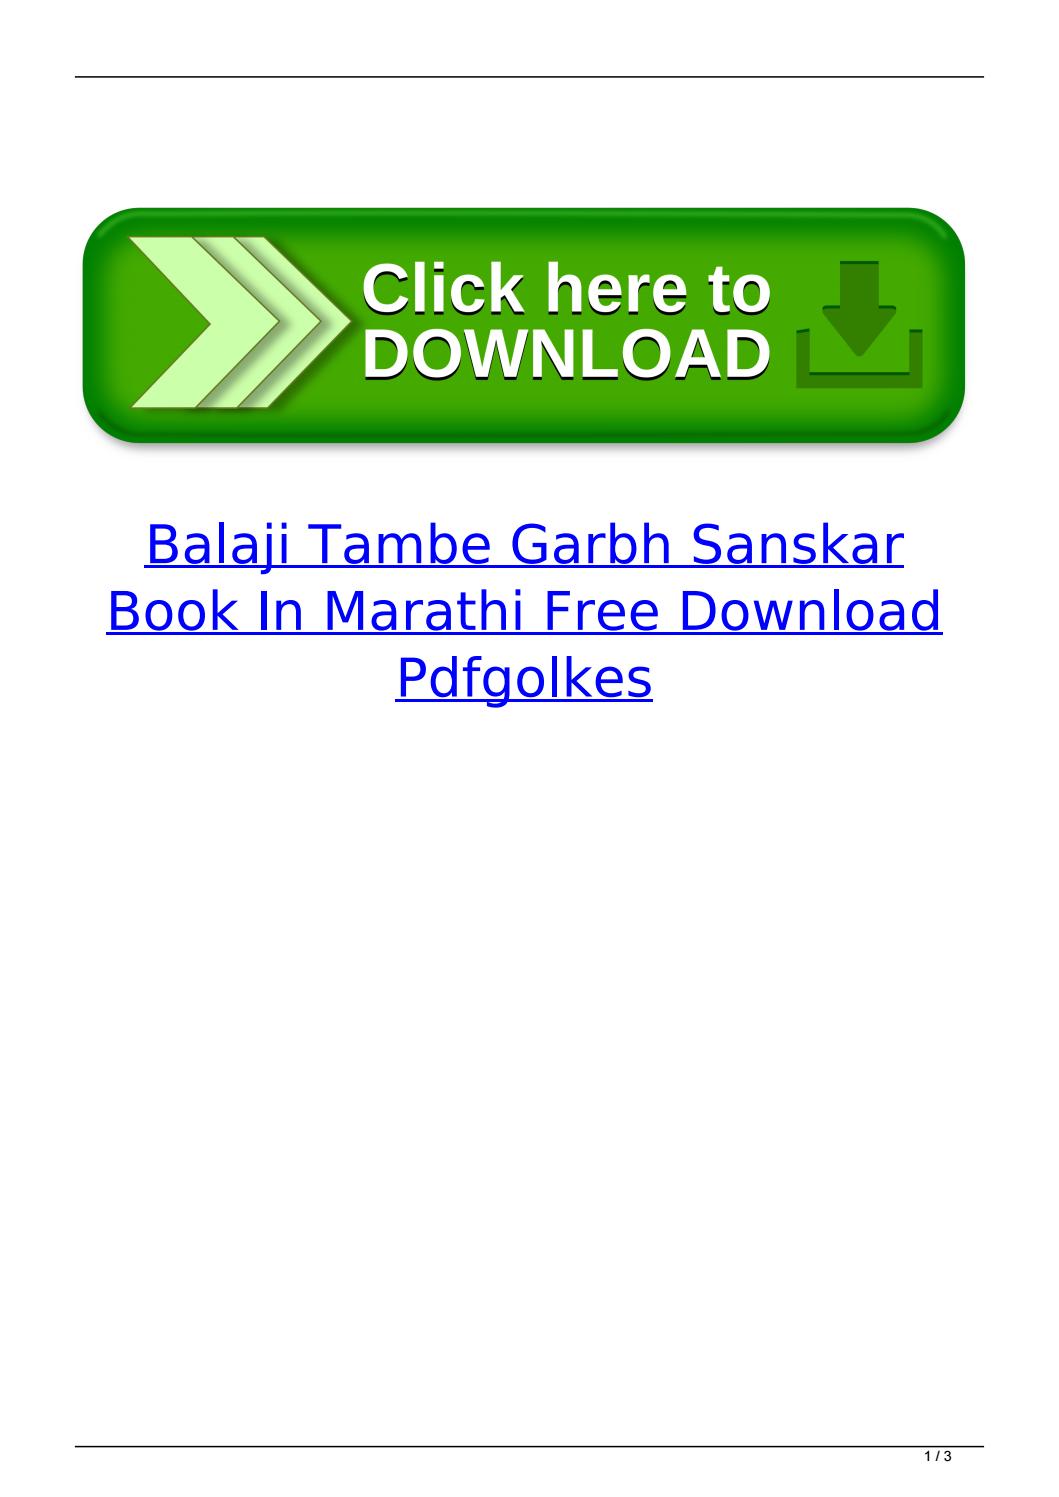 garbh sanskar audio in marathi